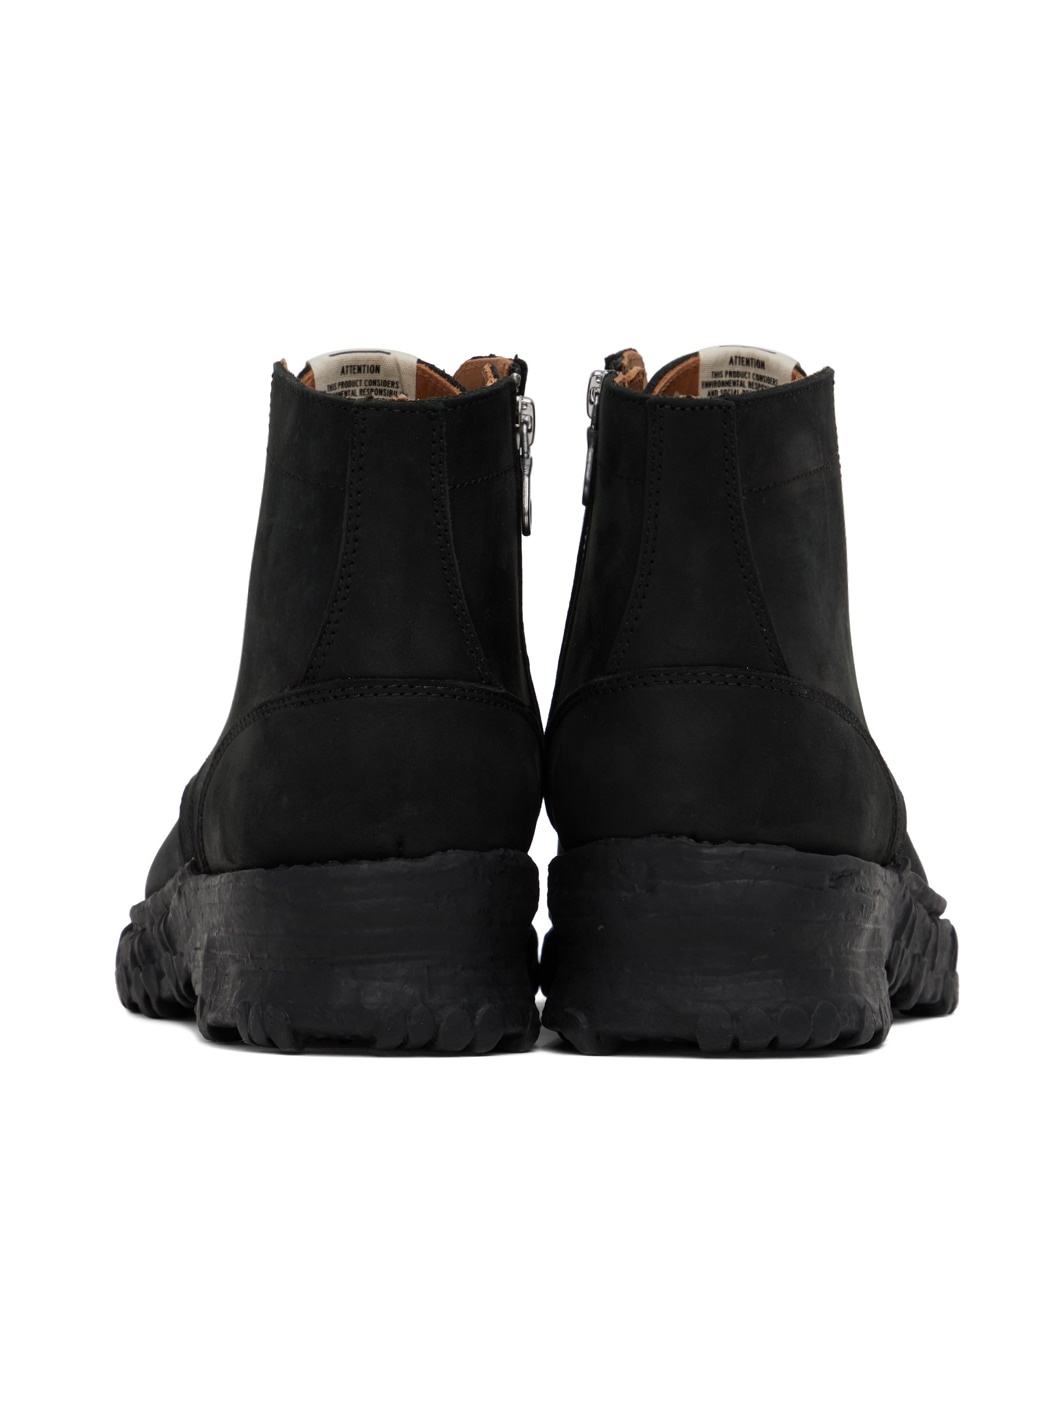 Black Vintage Like Boots - 2